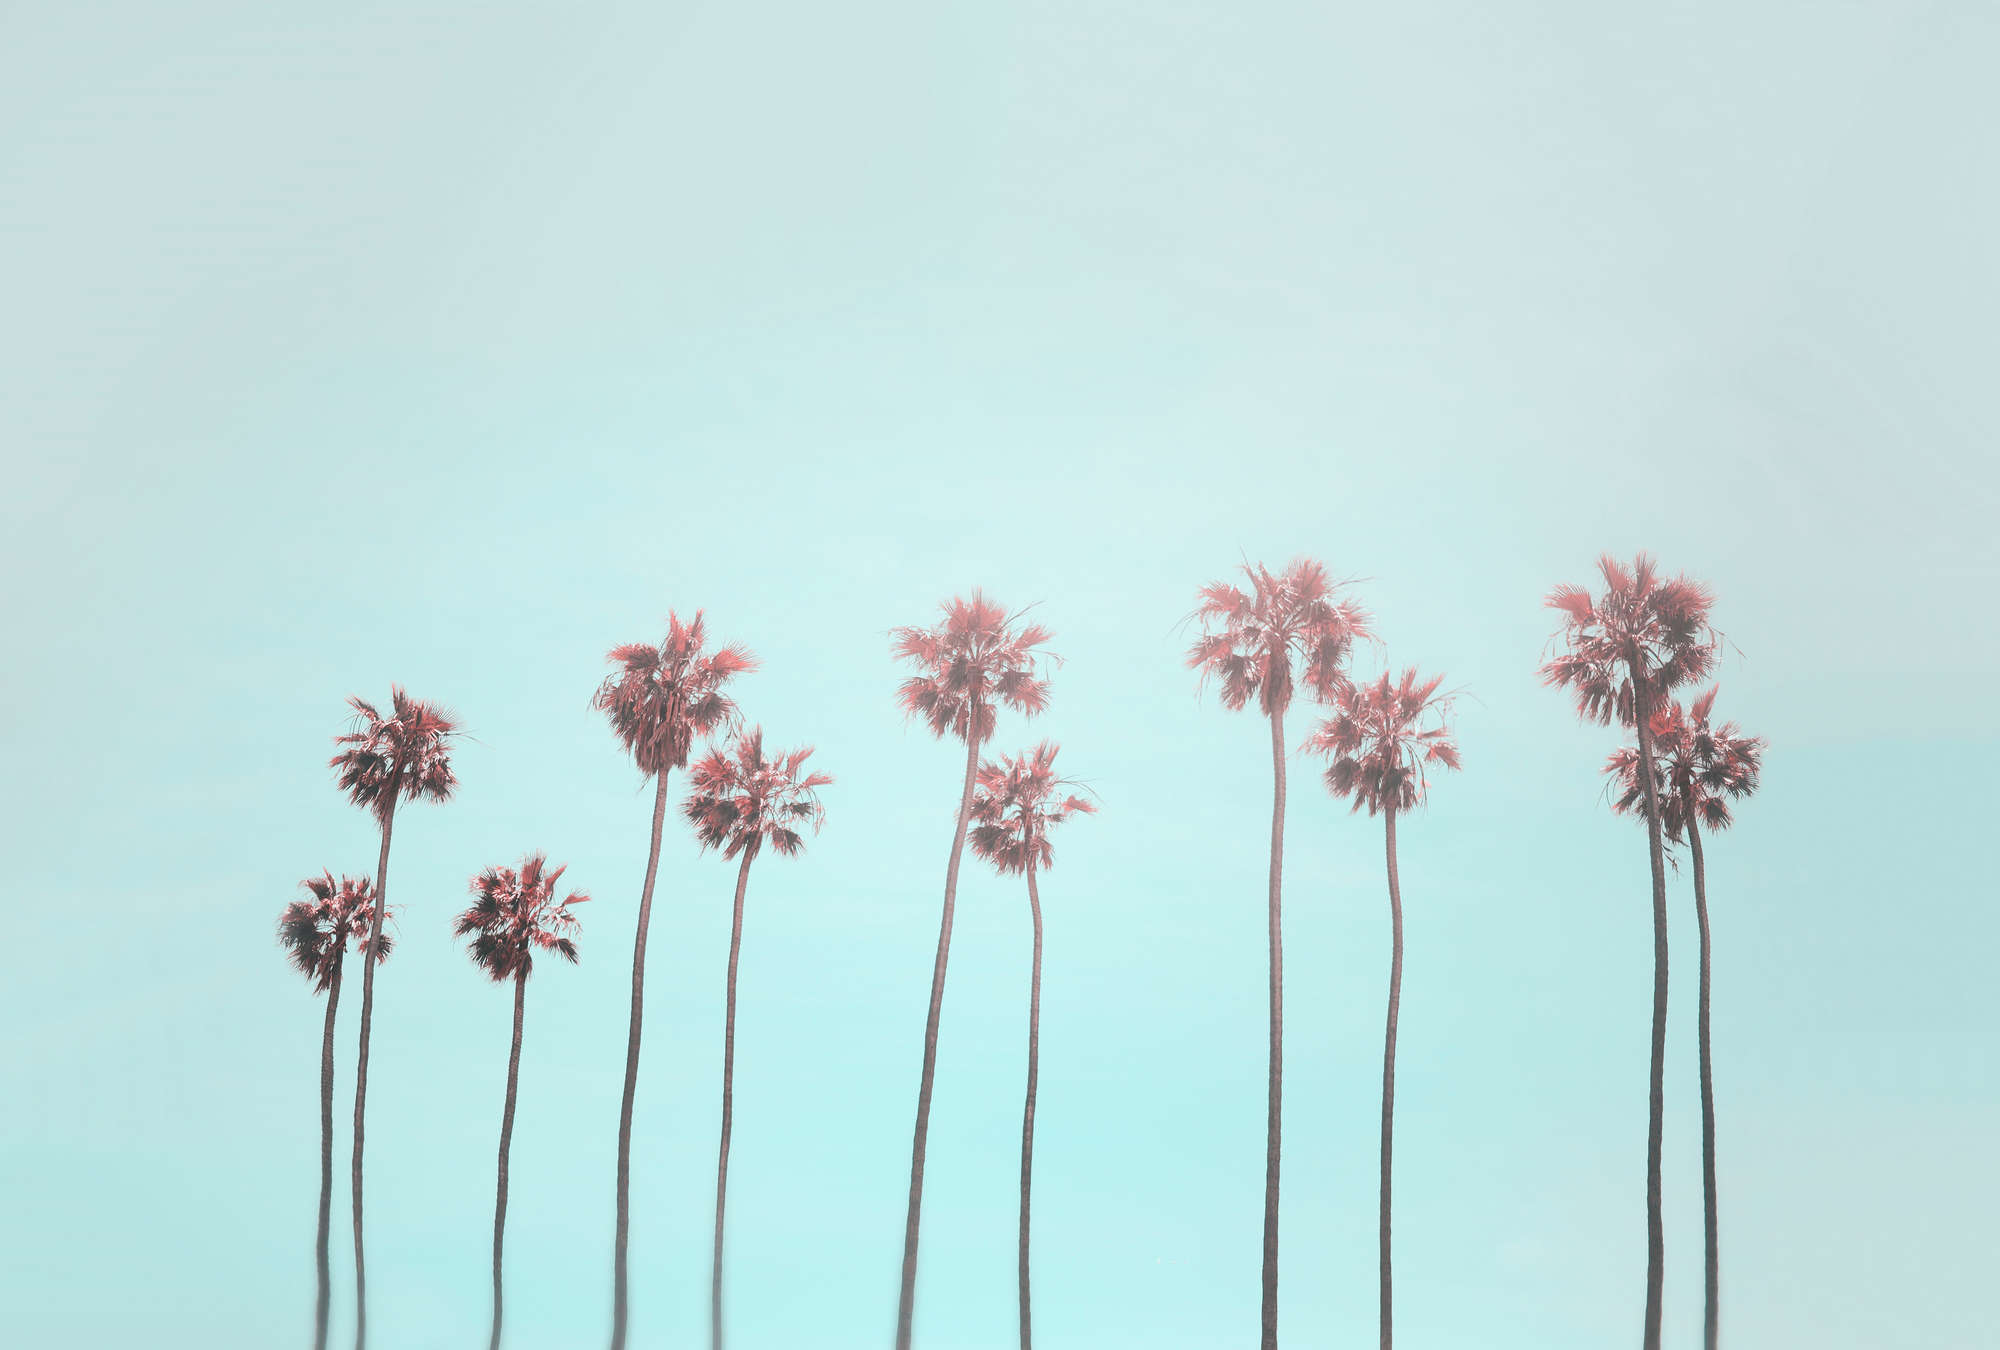             Papier peint panoramique Palmiers & ciel pour une sensation de plage en turquoise & rose
        